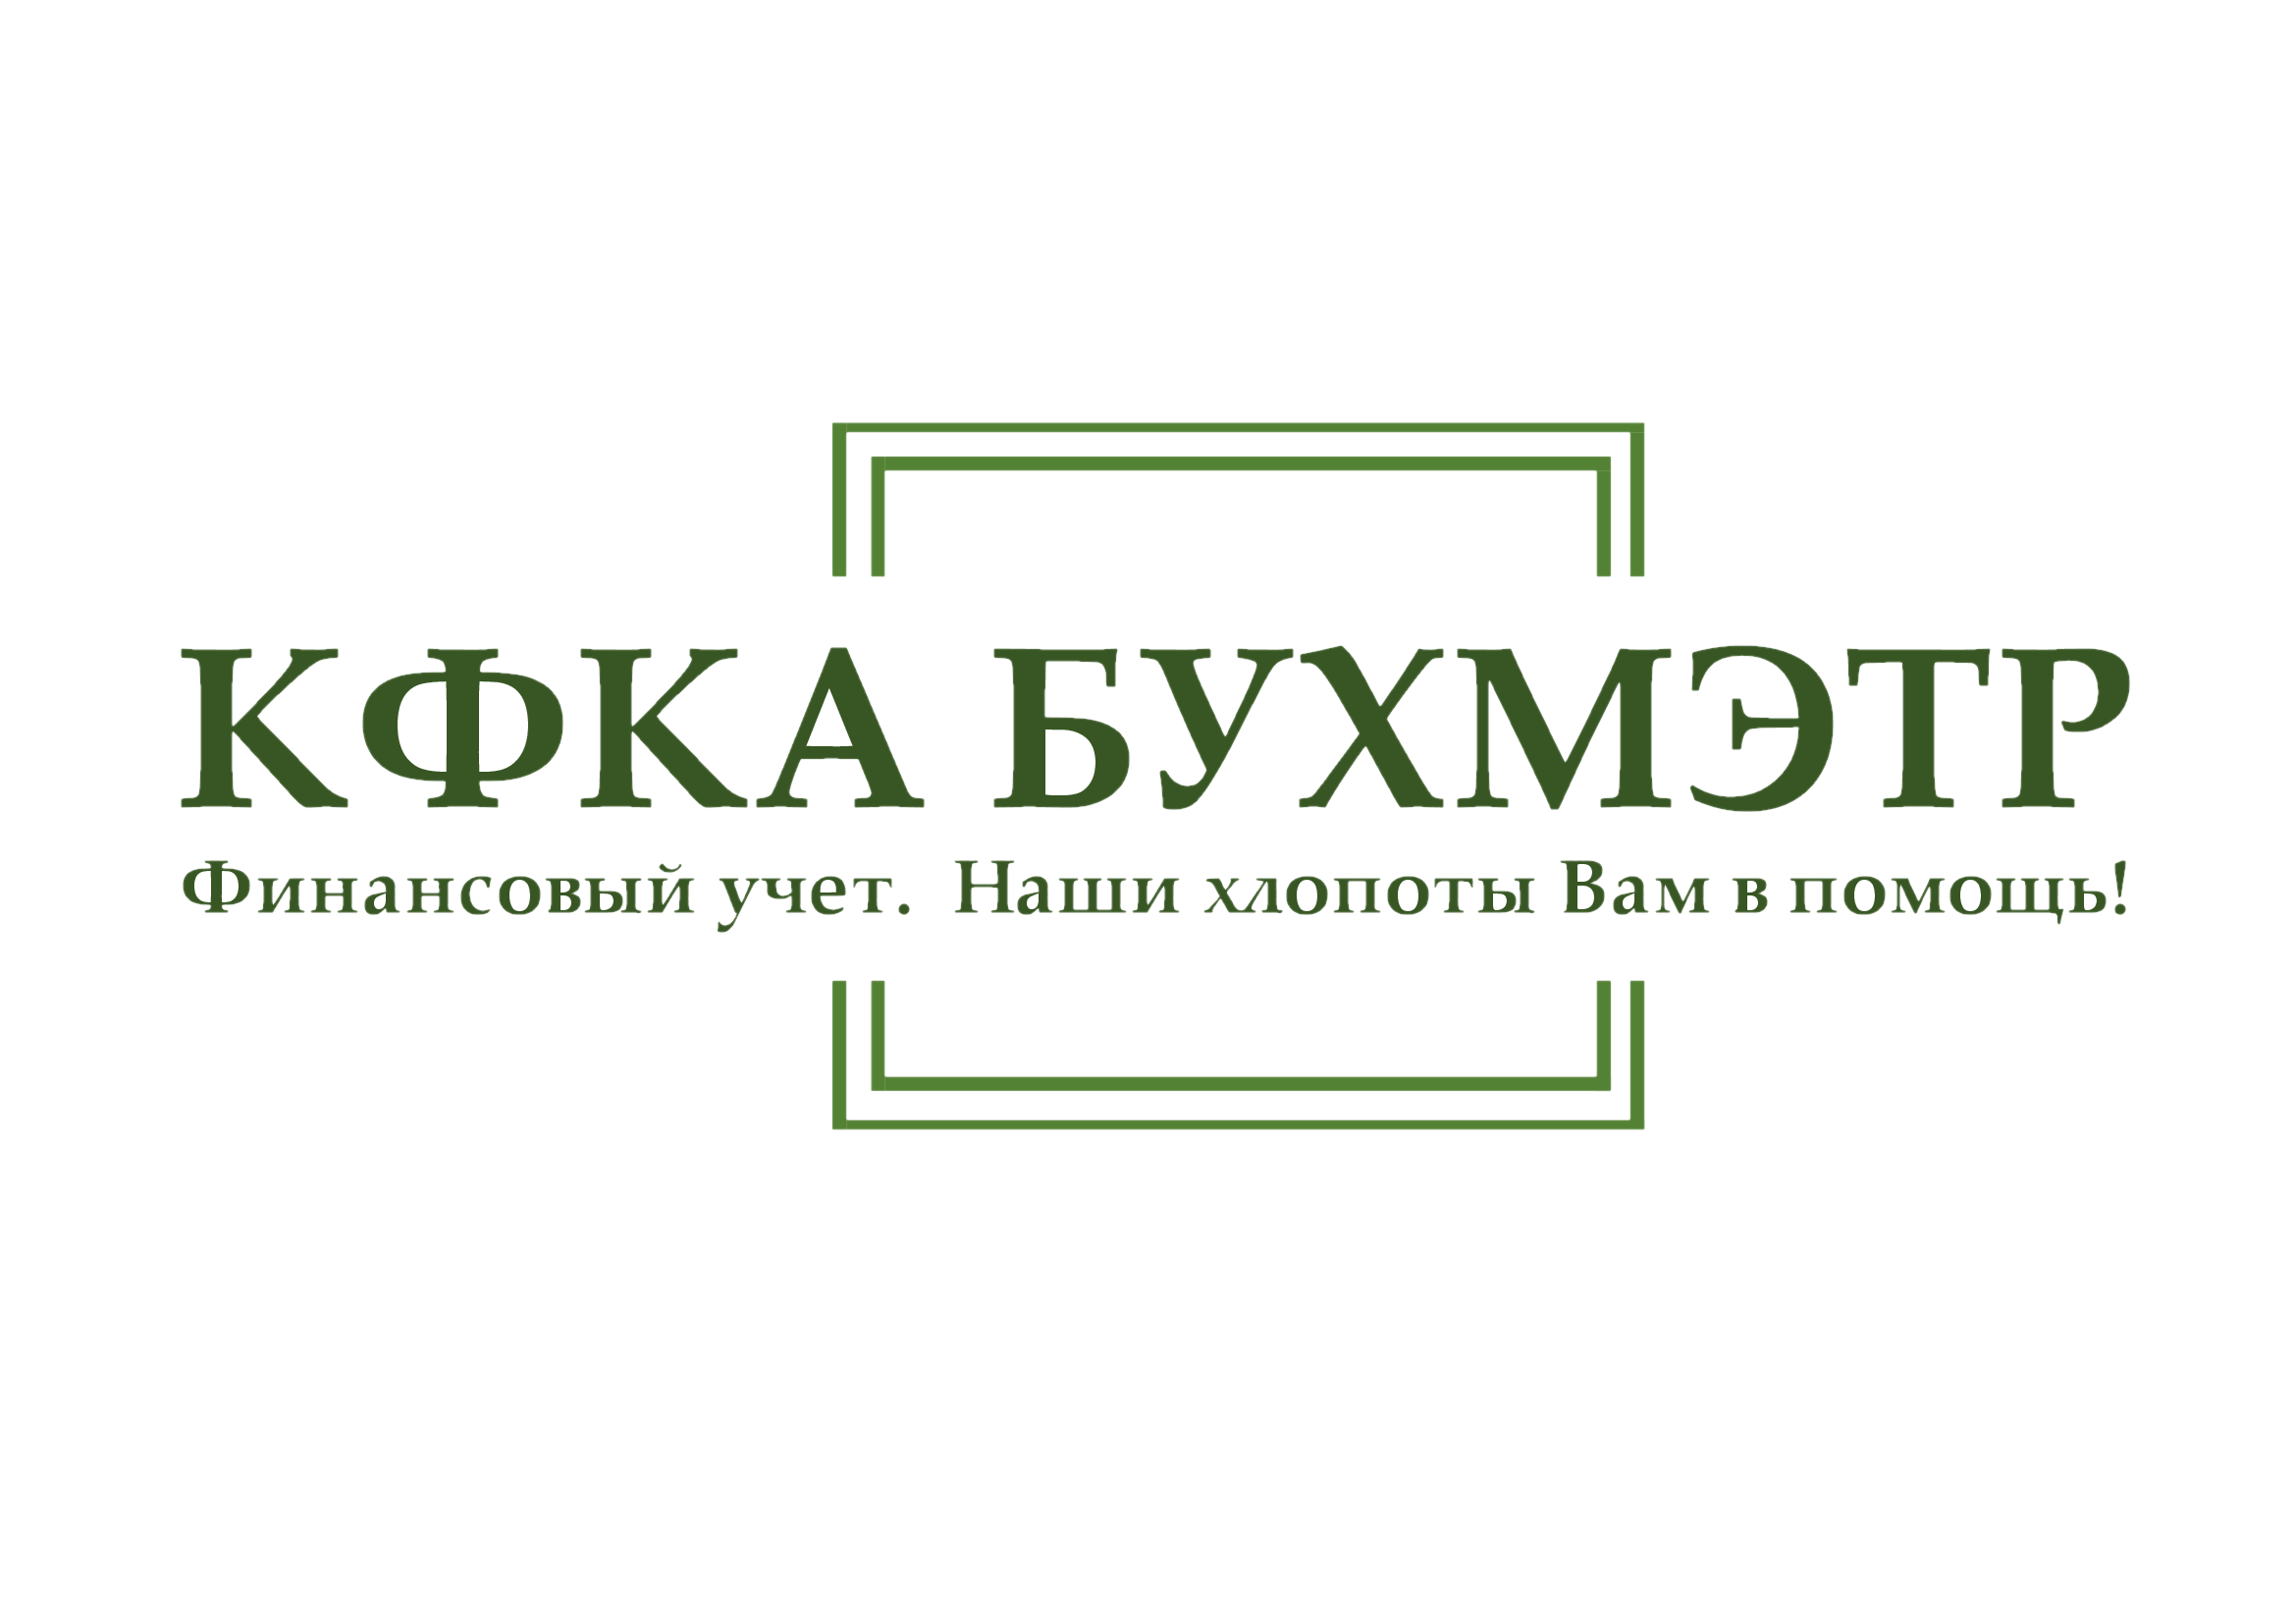 Логотип компании Компания финансового консалтинга и аутсорсинга "БУХМЭТР"